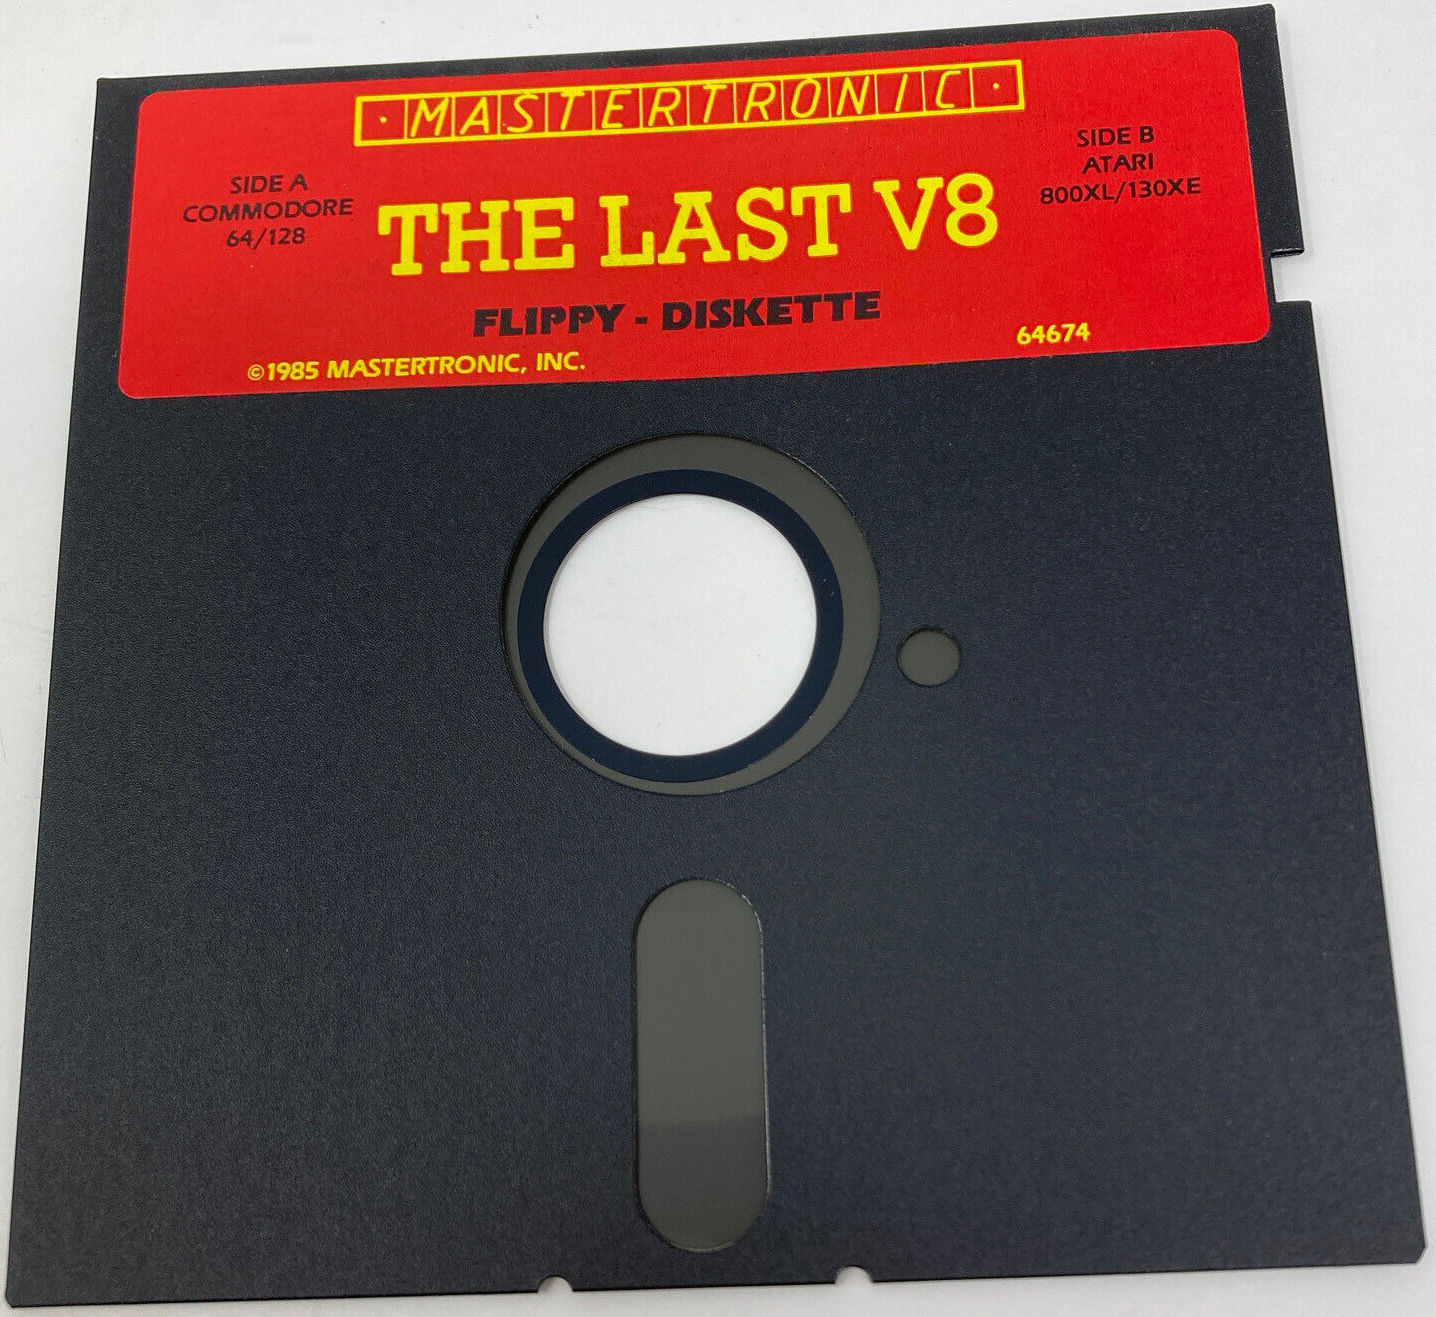 Last V8 - Commodore 64